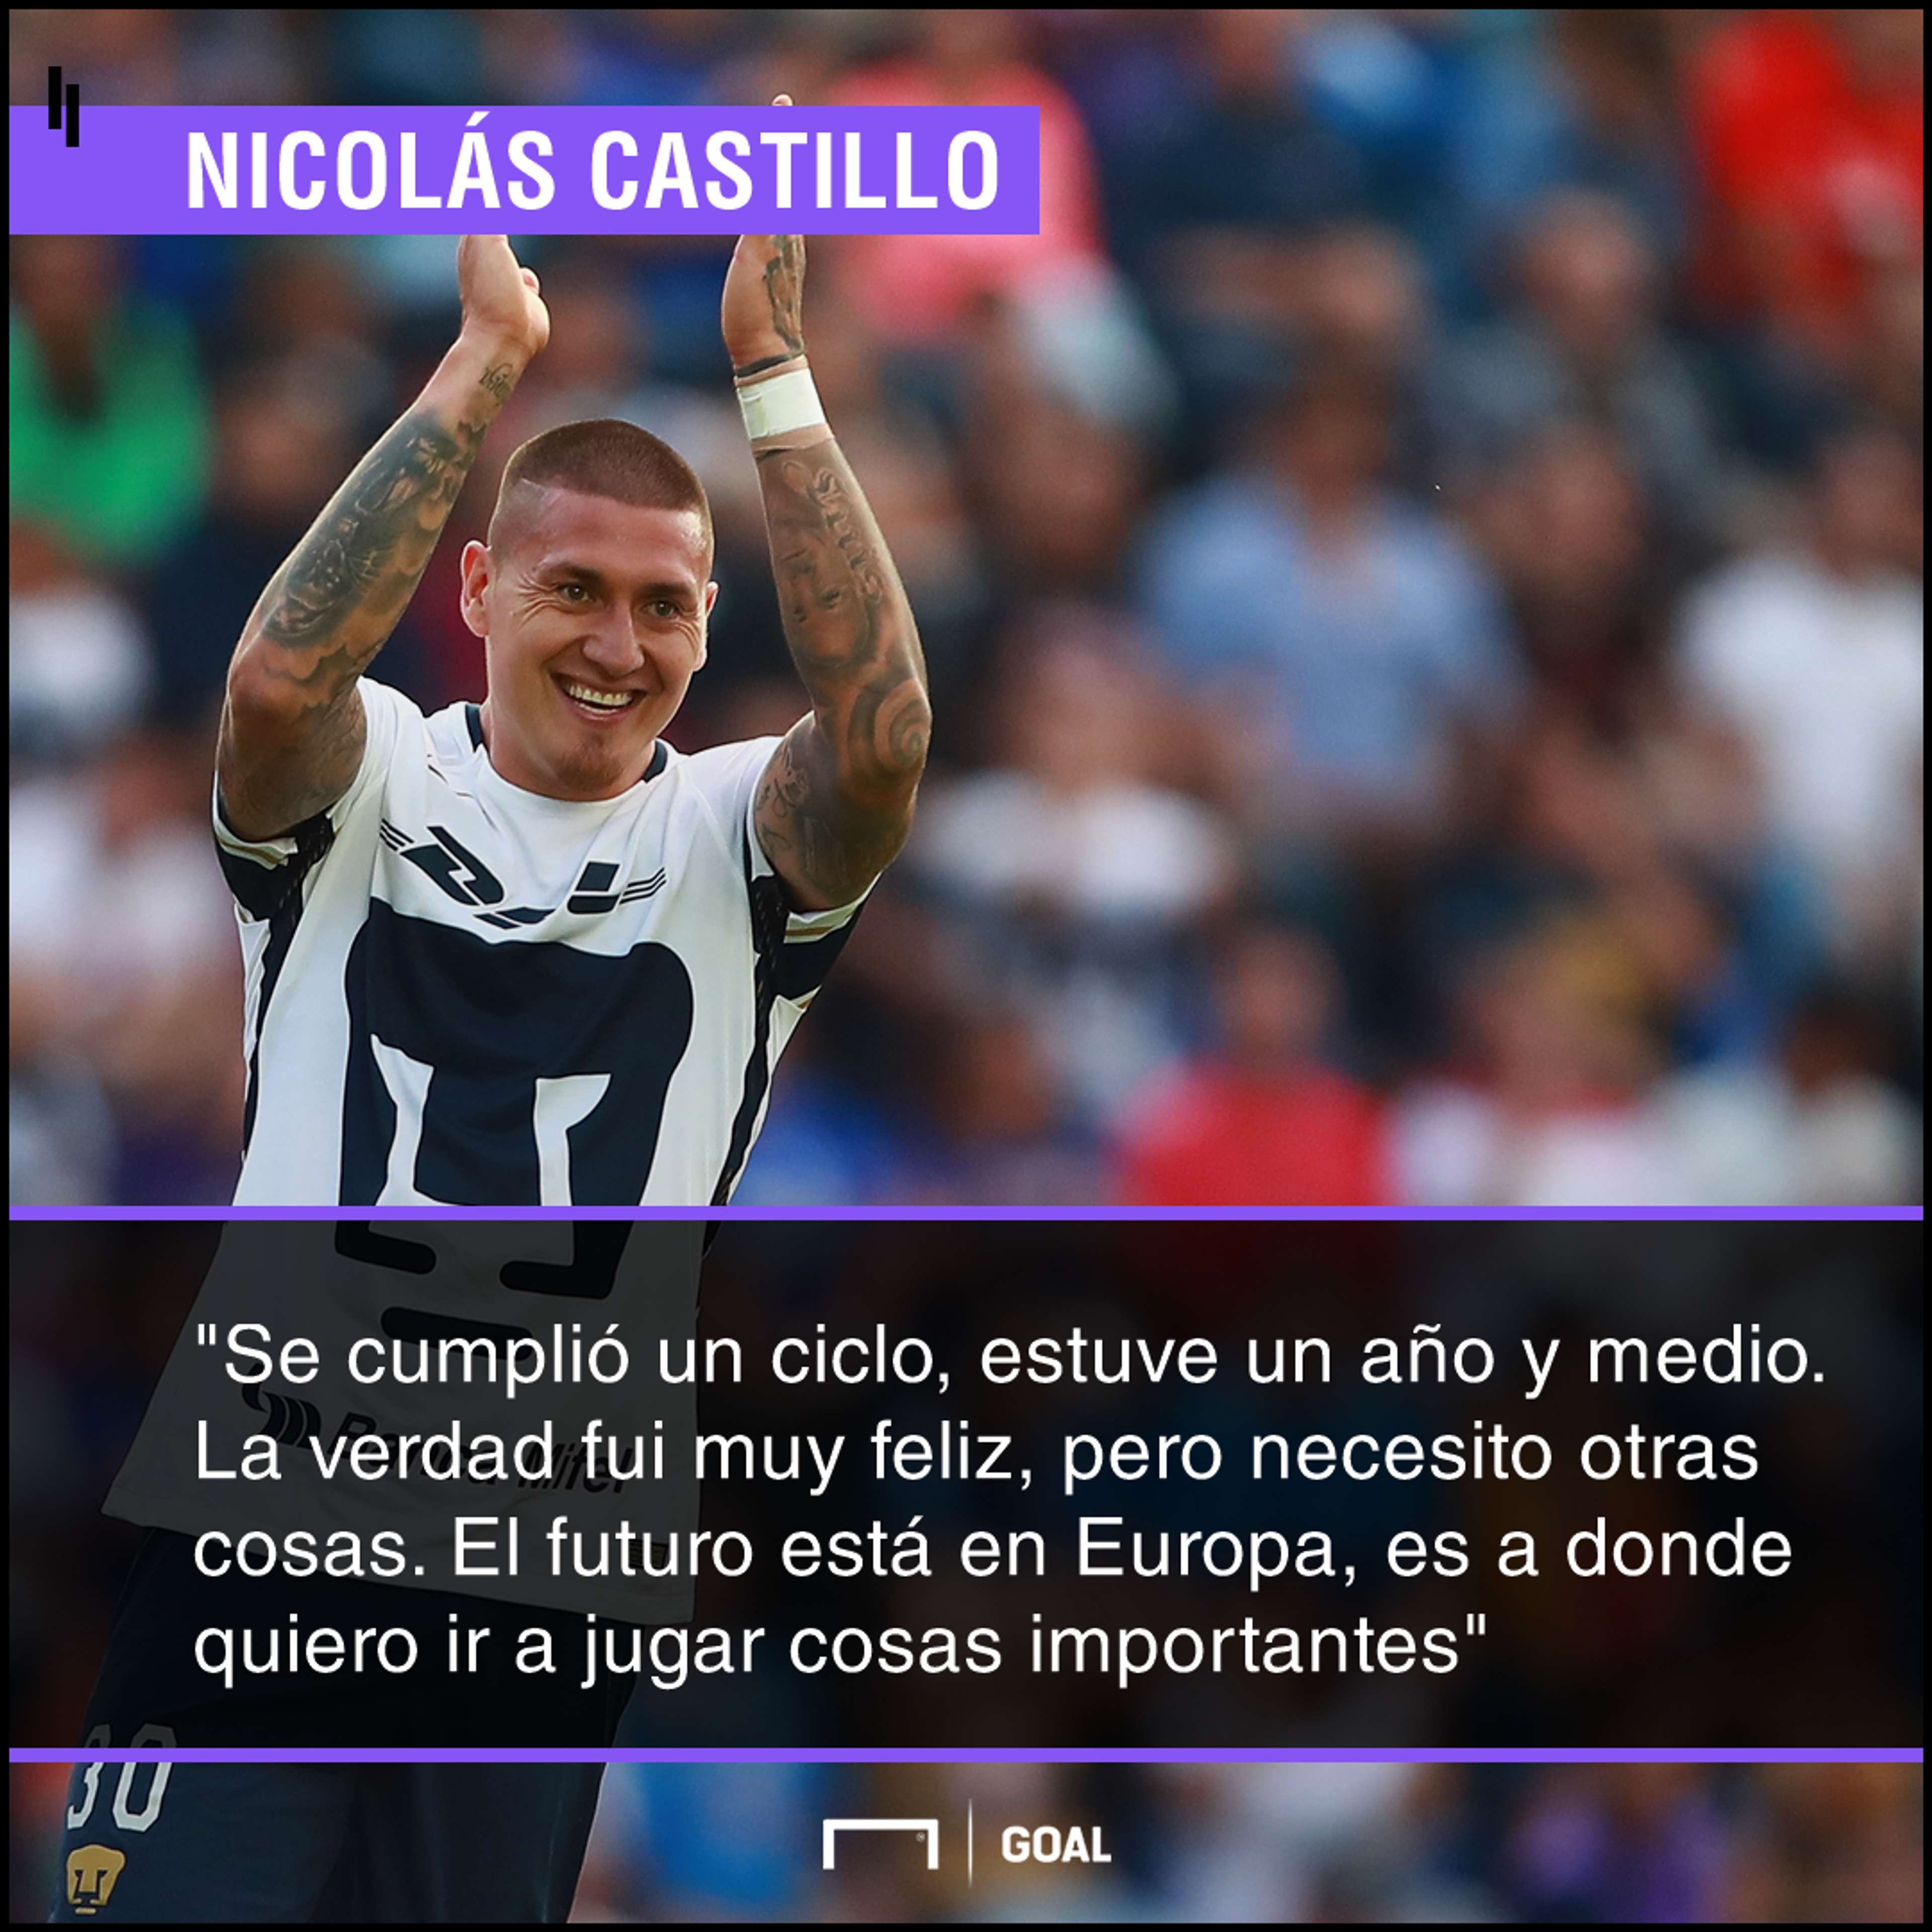 Nico Castillo quote